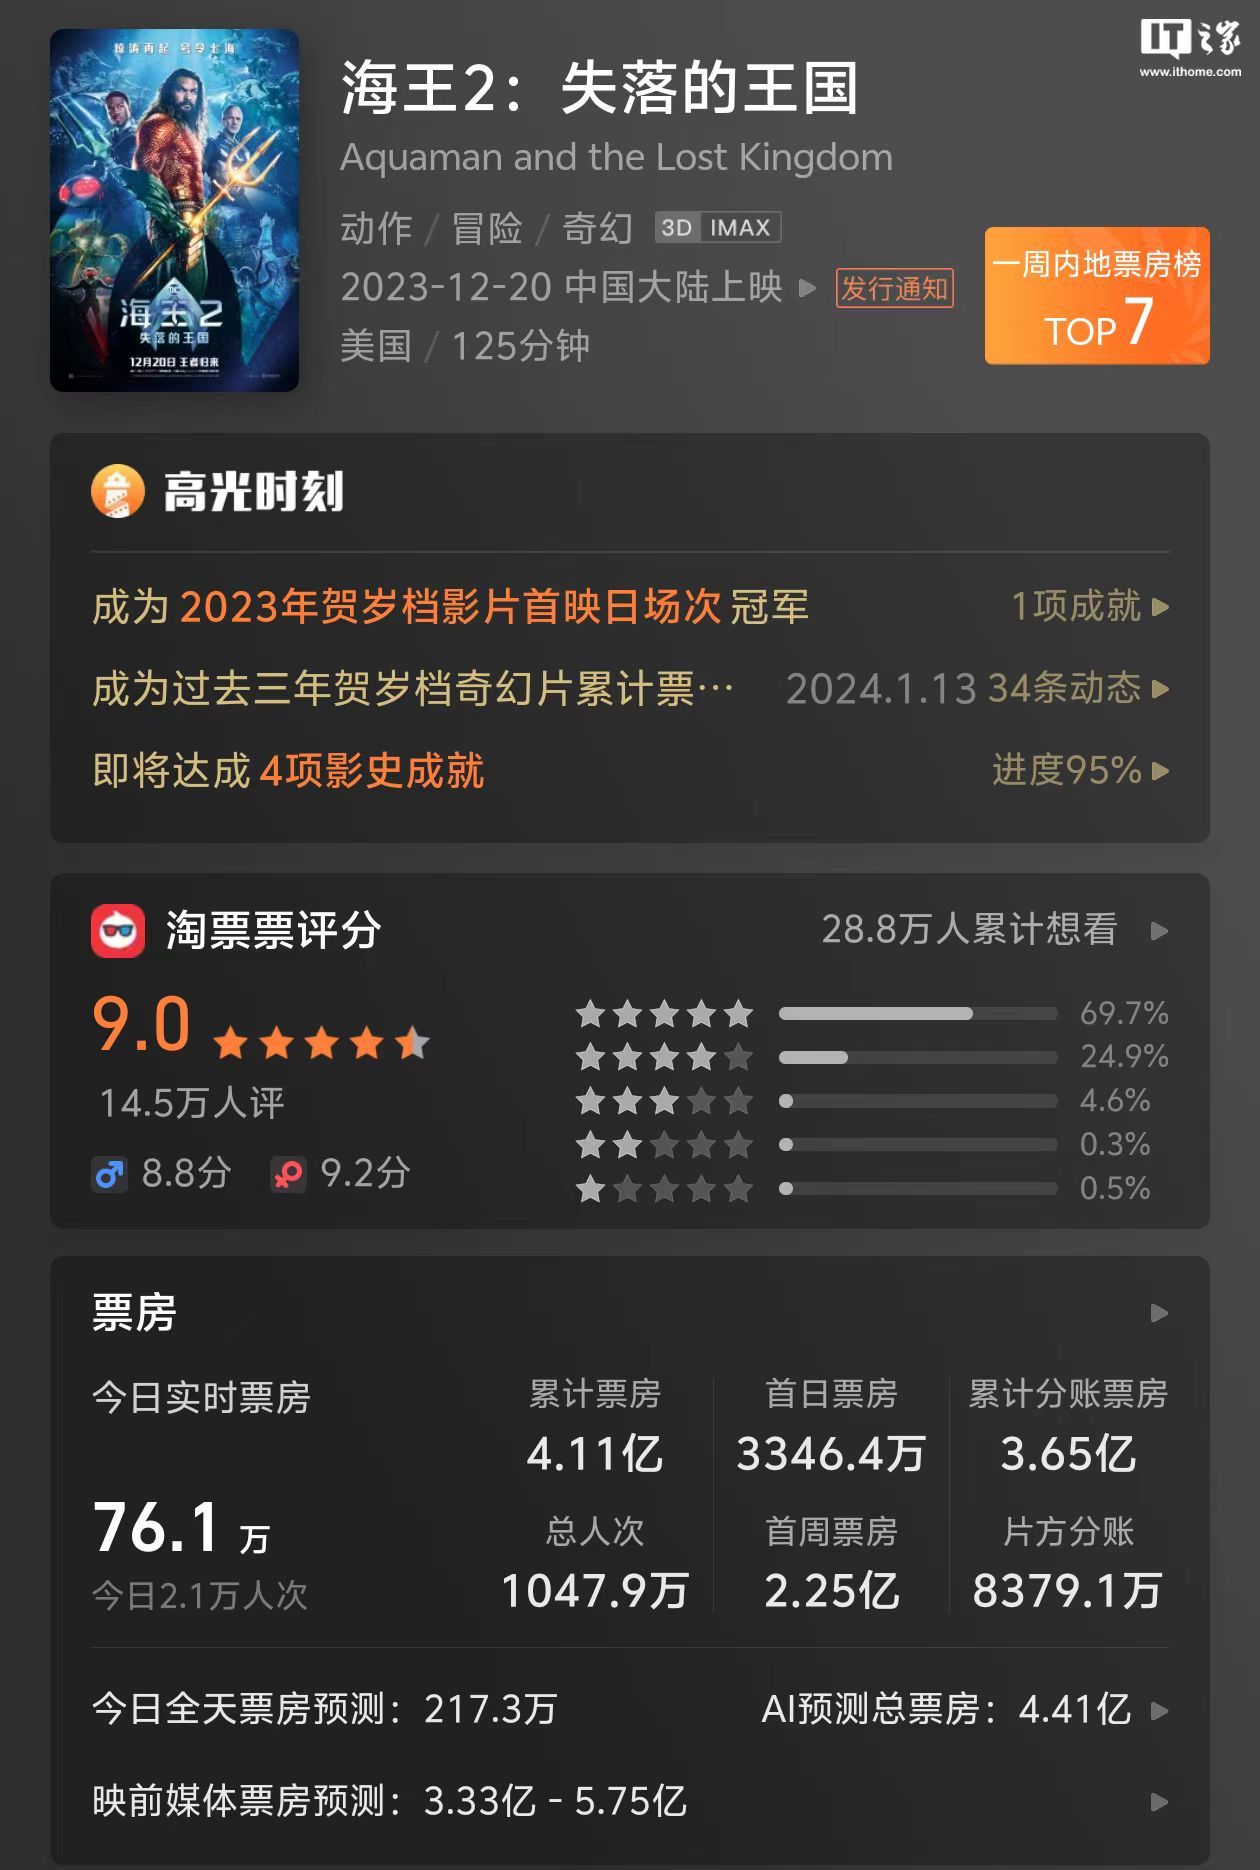 DC 电影《海王 2：失落的王国》中国大陆延长上映至 2 月 19 日，内地票房破 4 亿